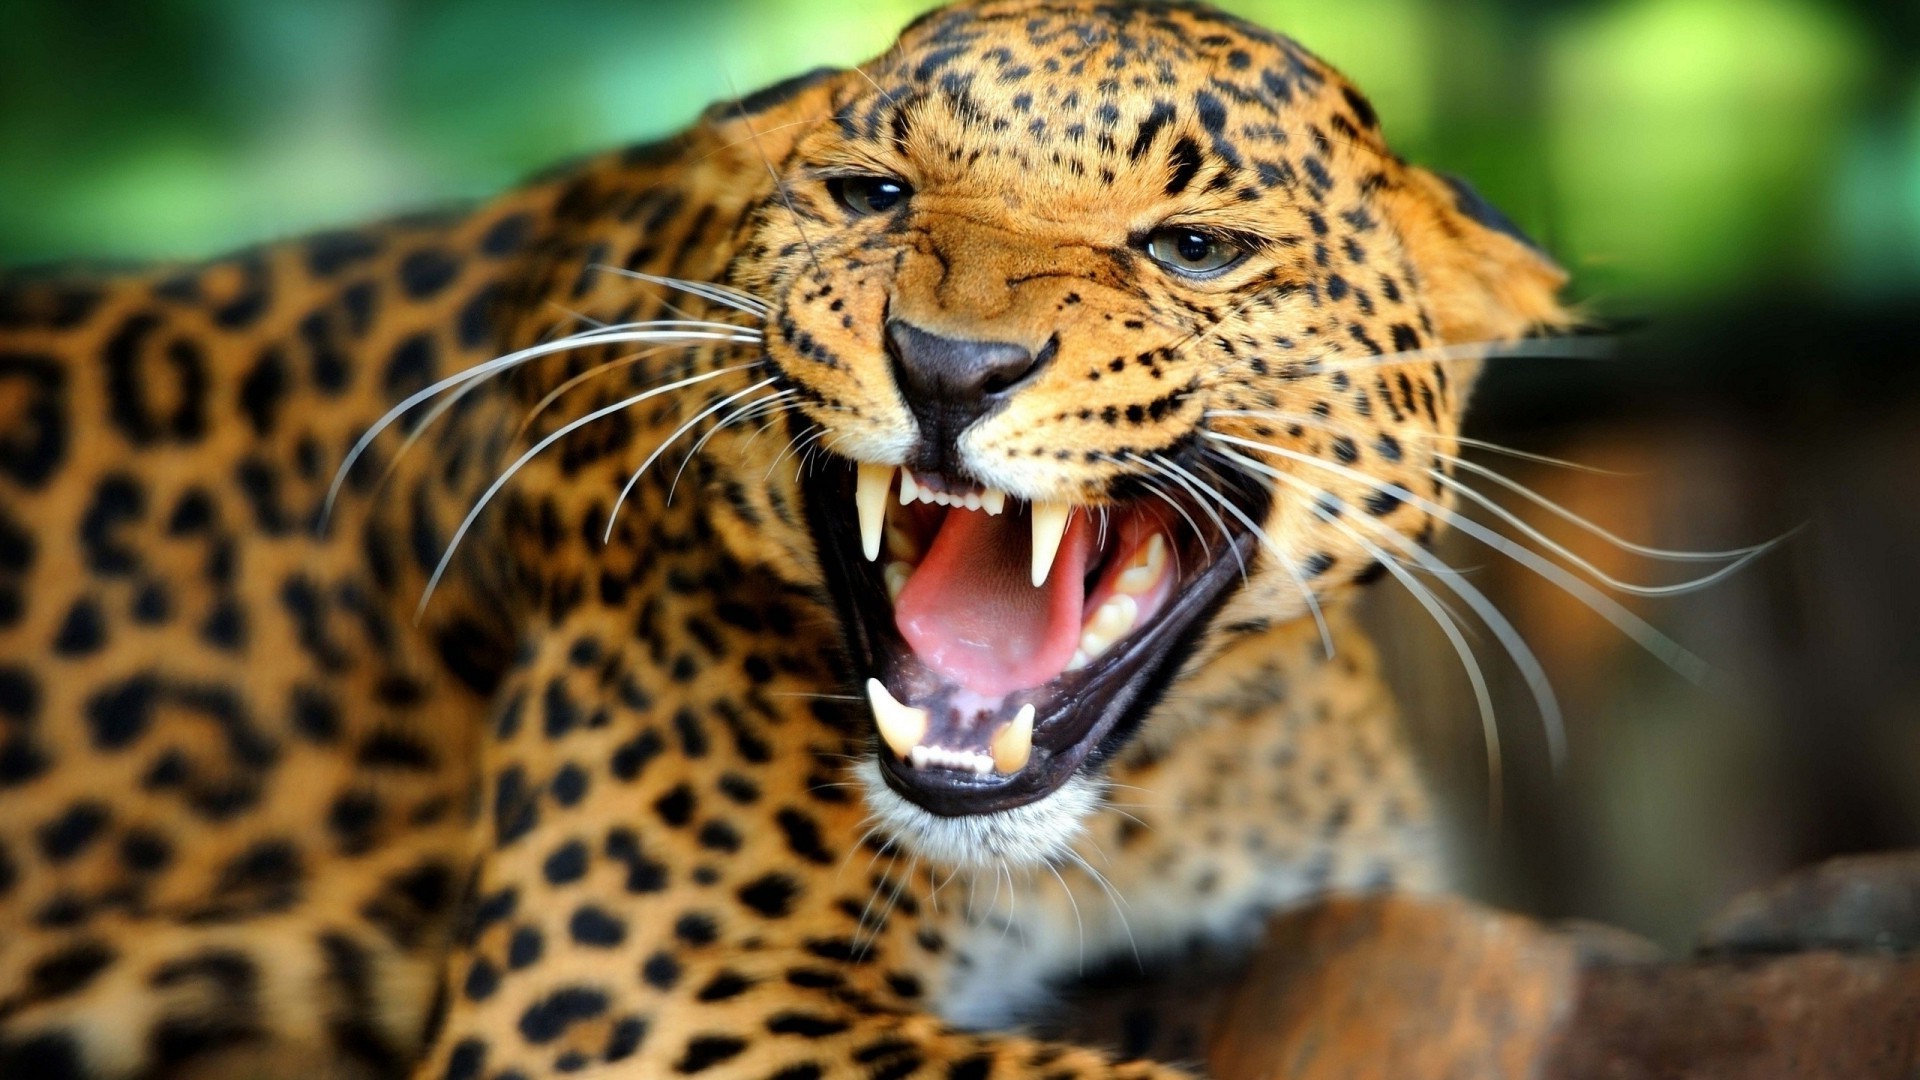 леопарды кошка дикой природы тигр леопард млекопитающее зоопарк хищник природа джунгли животное охотник портрет сафари дикий глаз злой опасность глядя охота агрессии